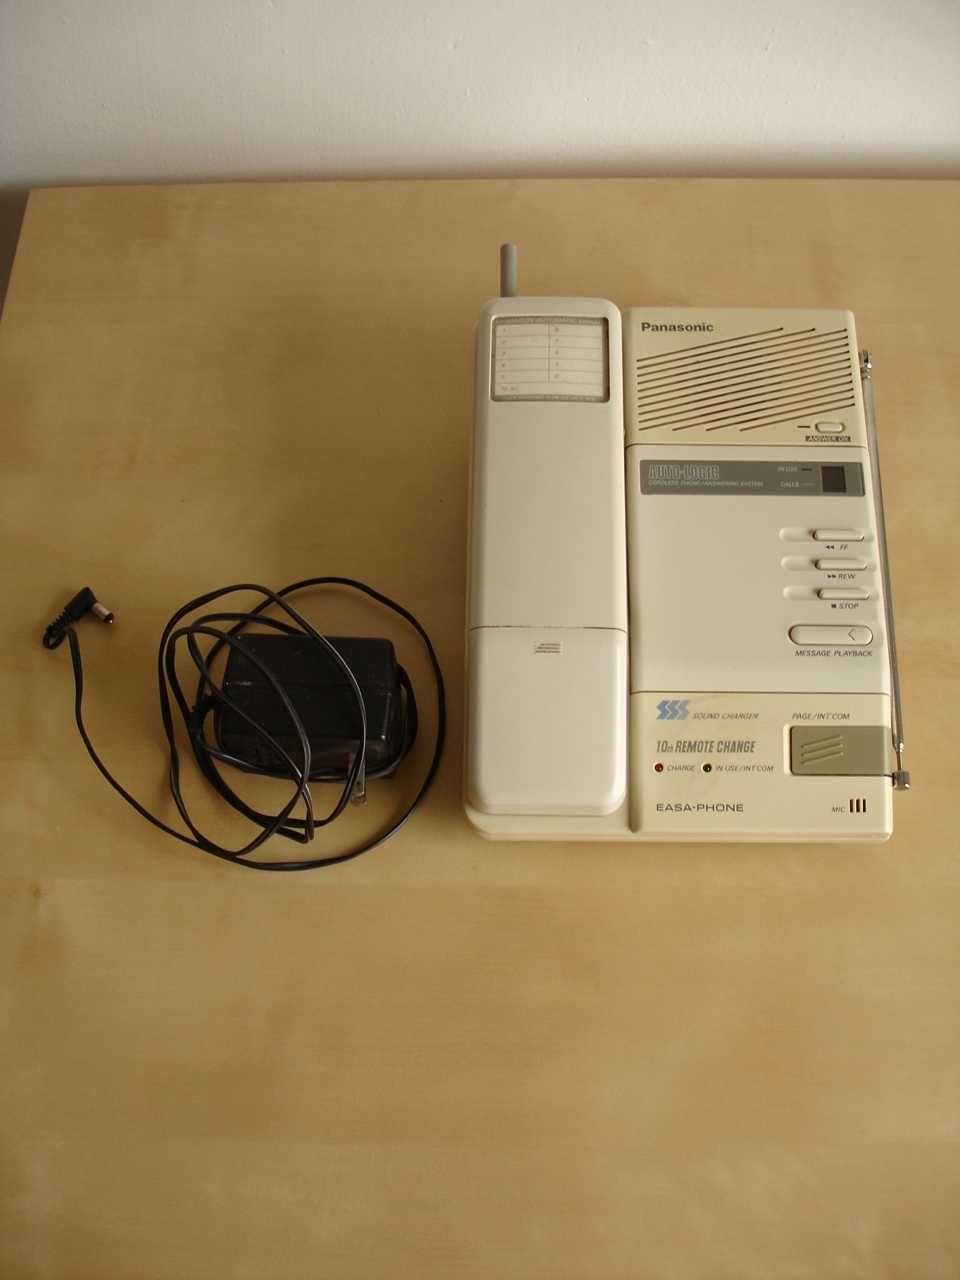 Panasonic KX-T4301BH telefon stacjonarny bezprzewodowy sekretarka